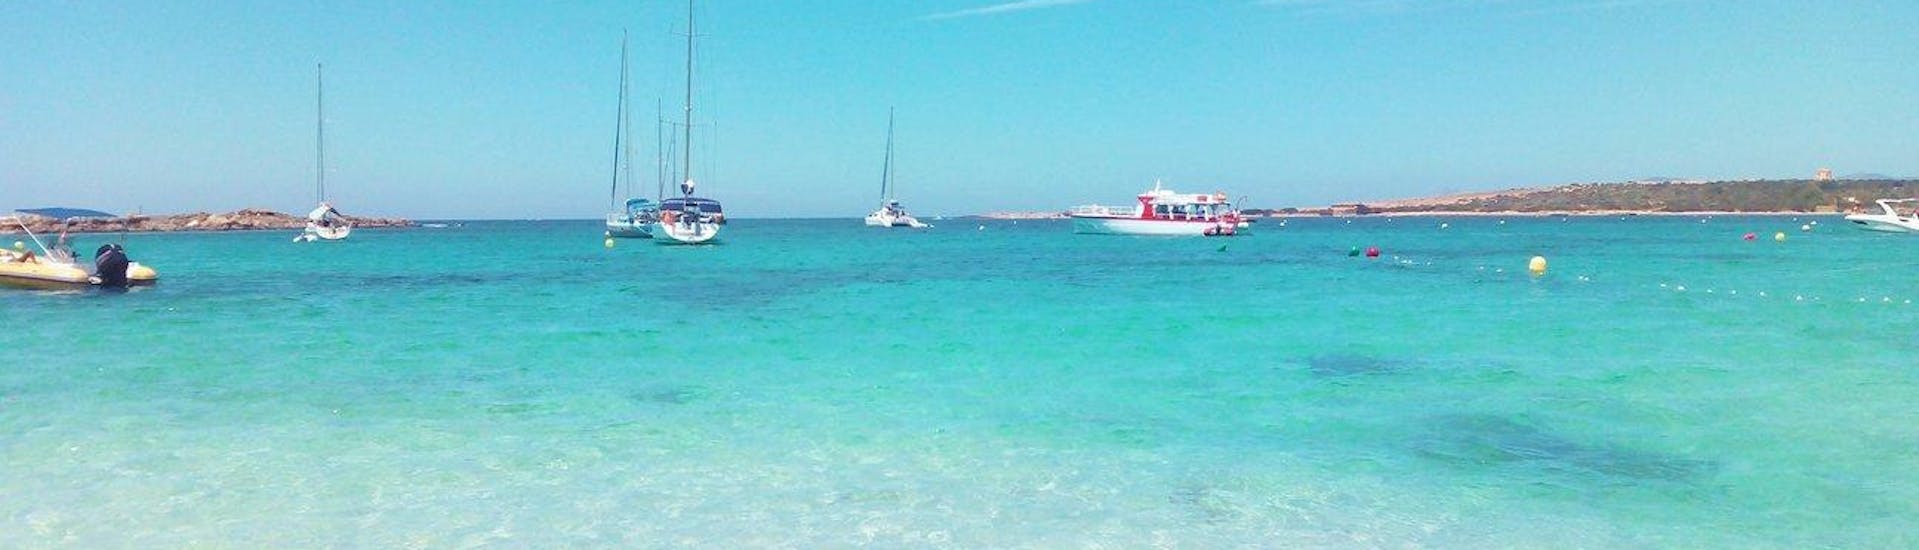 Bootstour von Ibiza nach Formentera mit SUP & Schnorcheln.